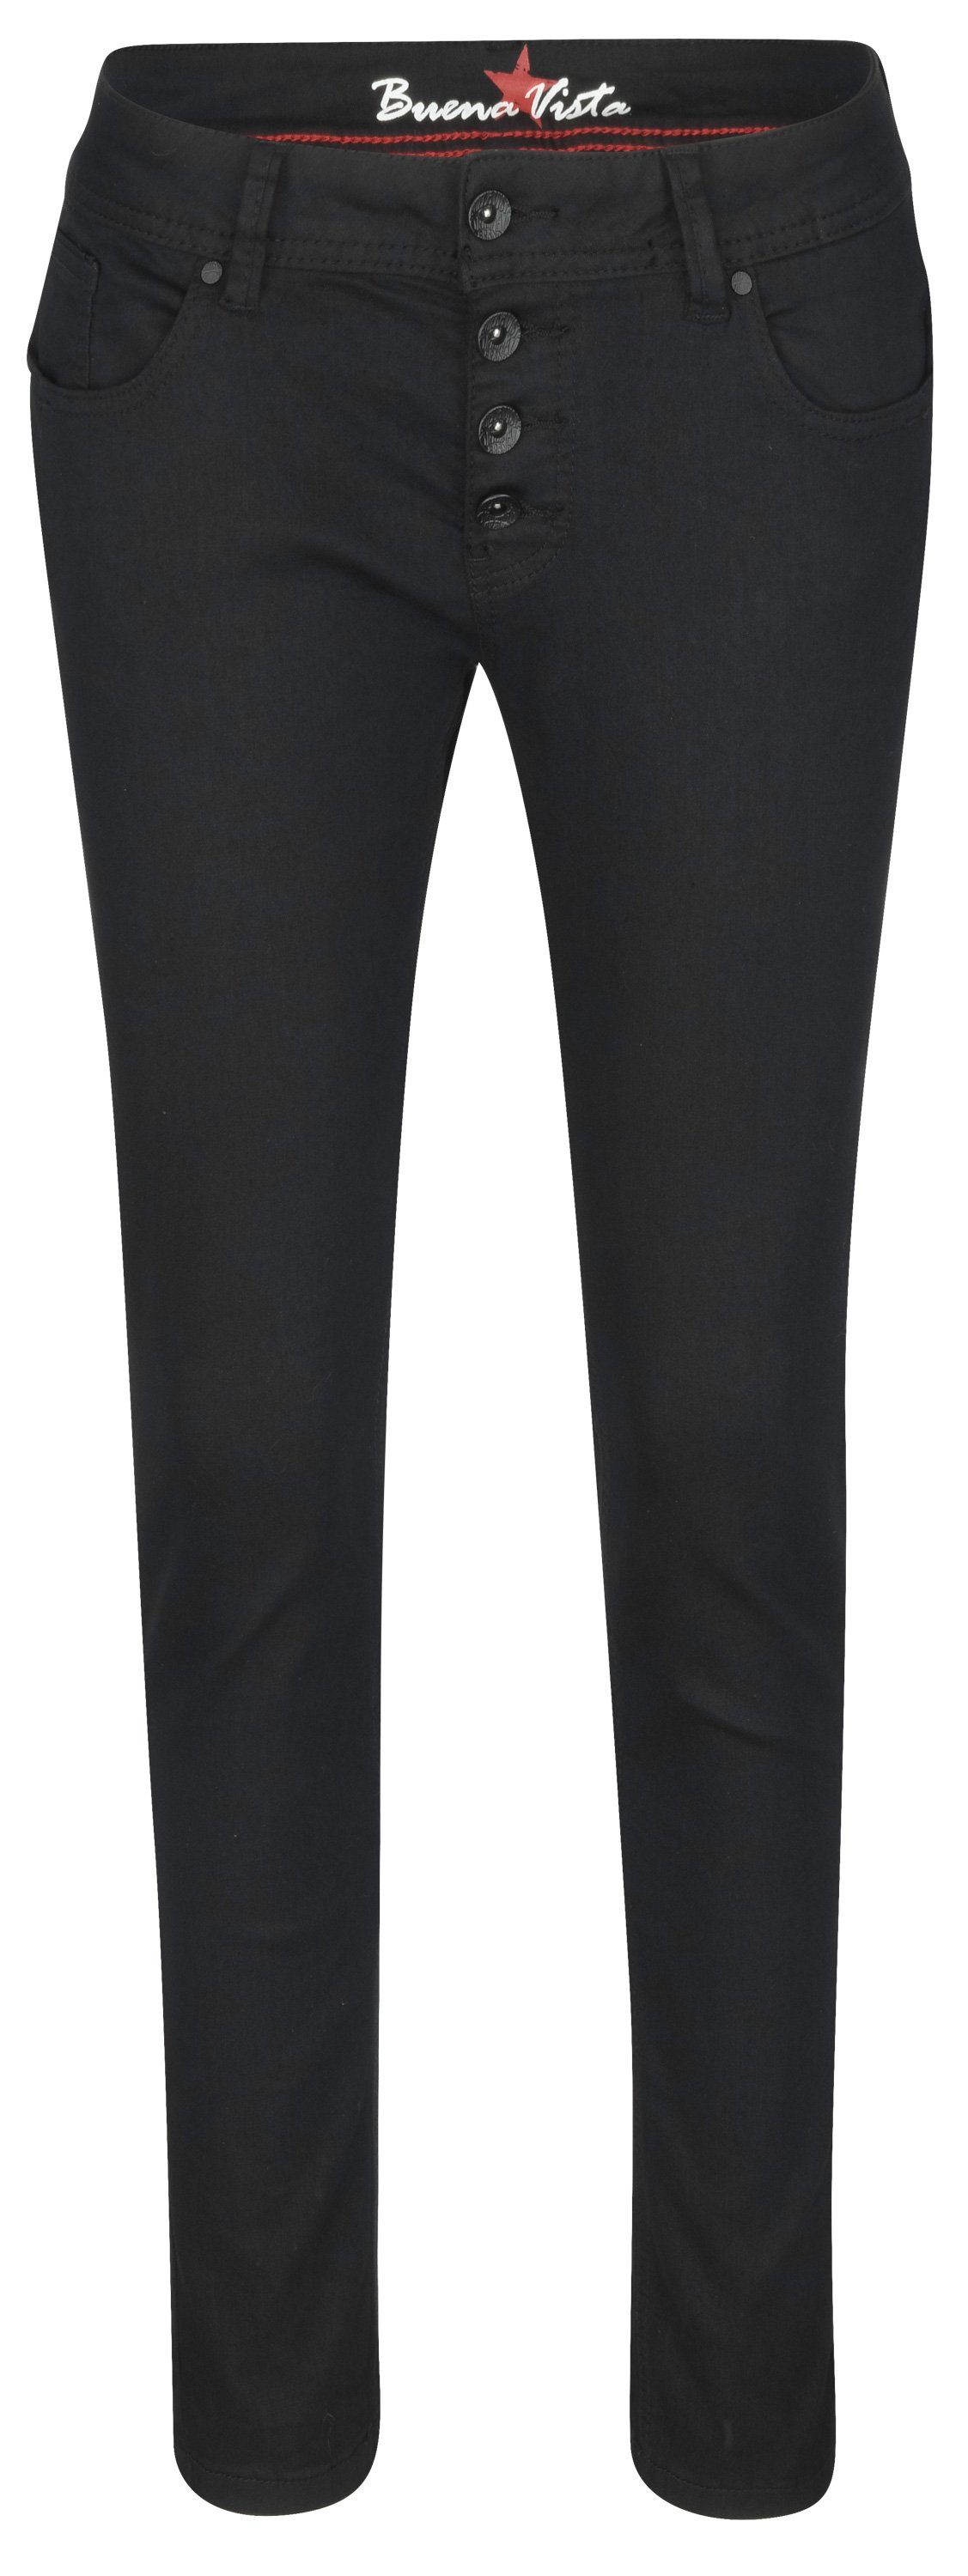 Buena Vista Stretch-Jeans BUENA VISTA MALIBU S black crop 2309 B5837 660.014 - Stretch Twill | Stretchjeans